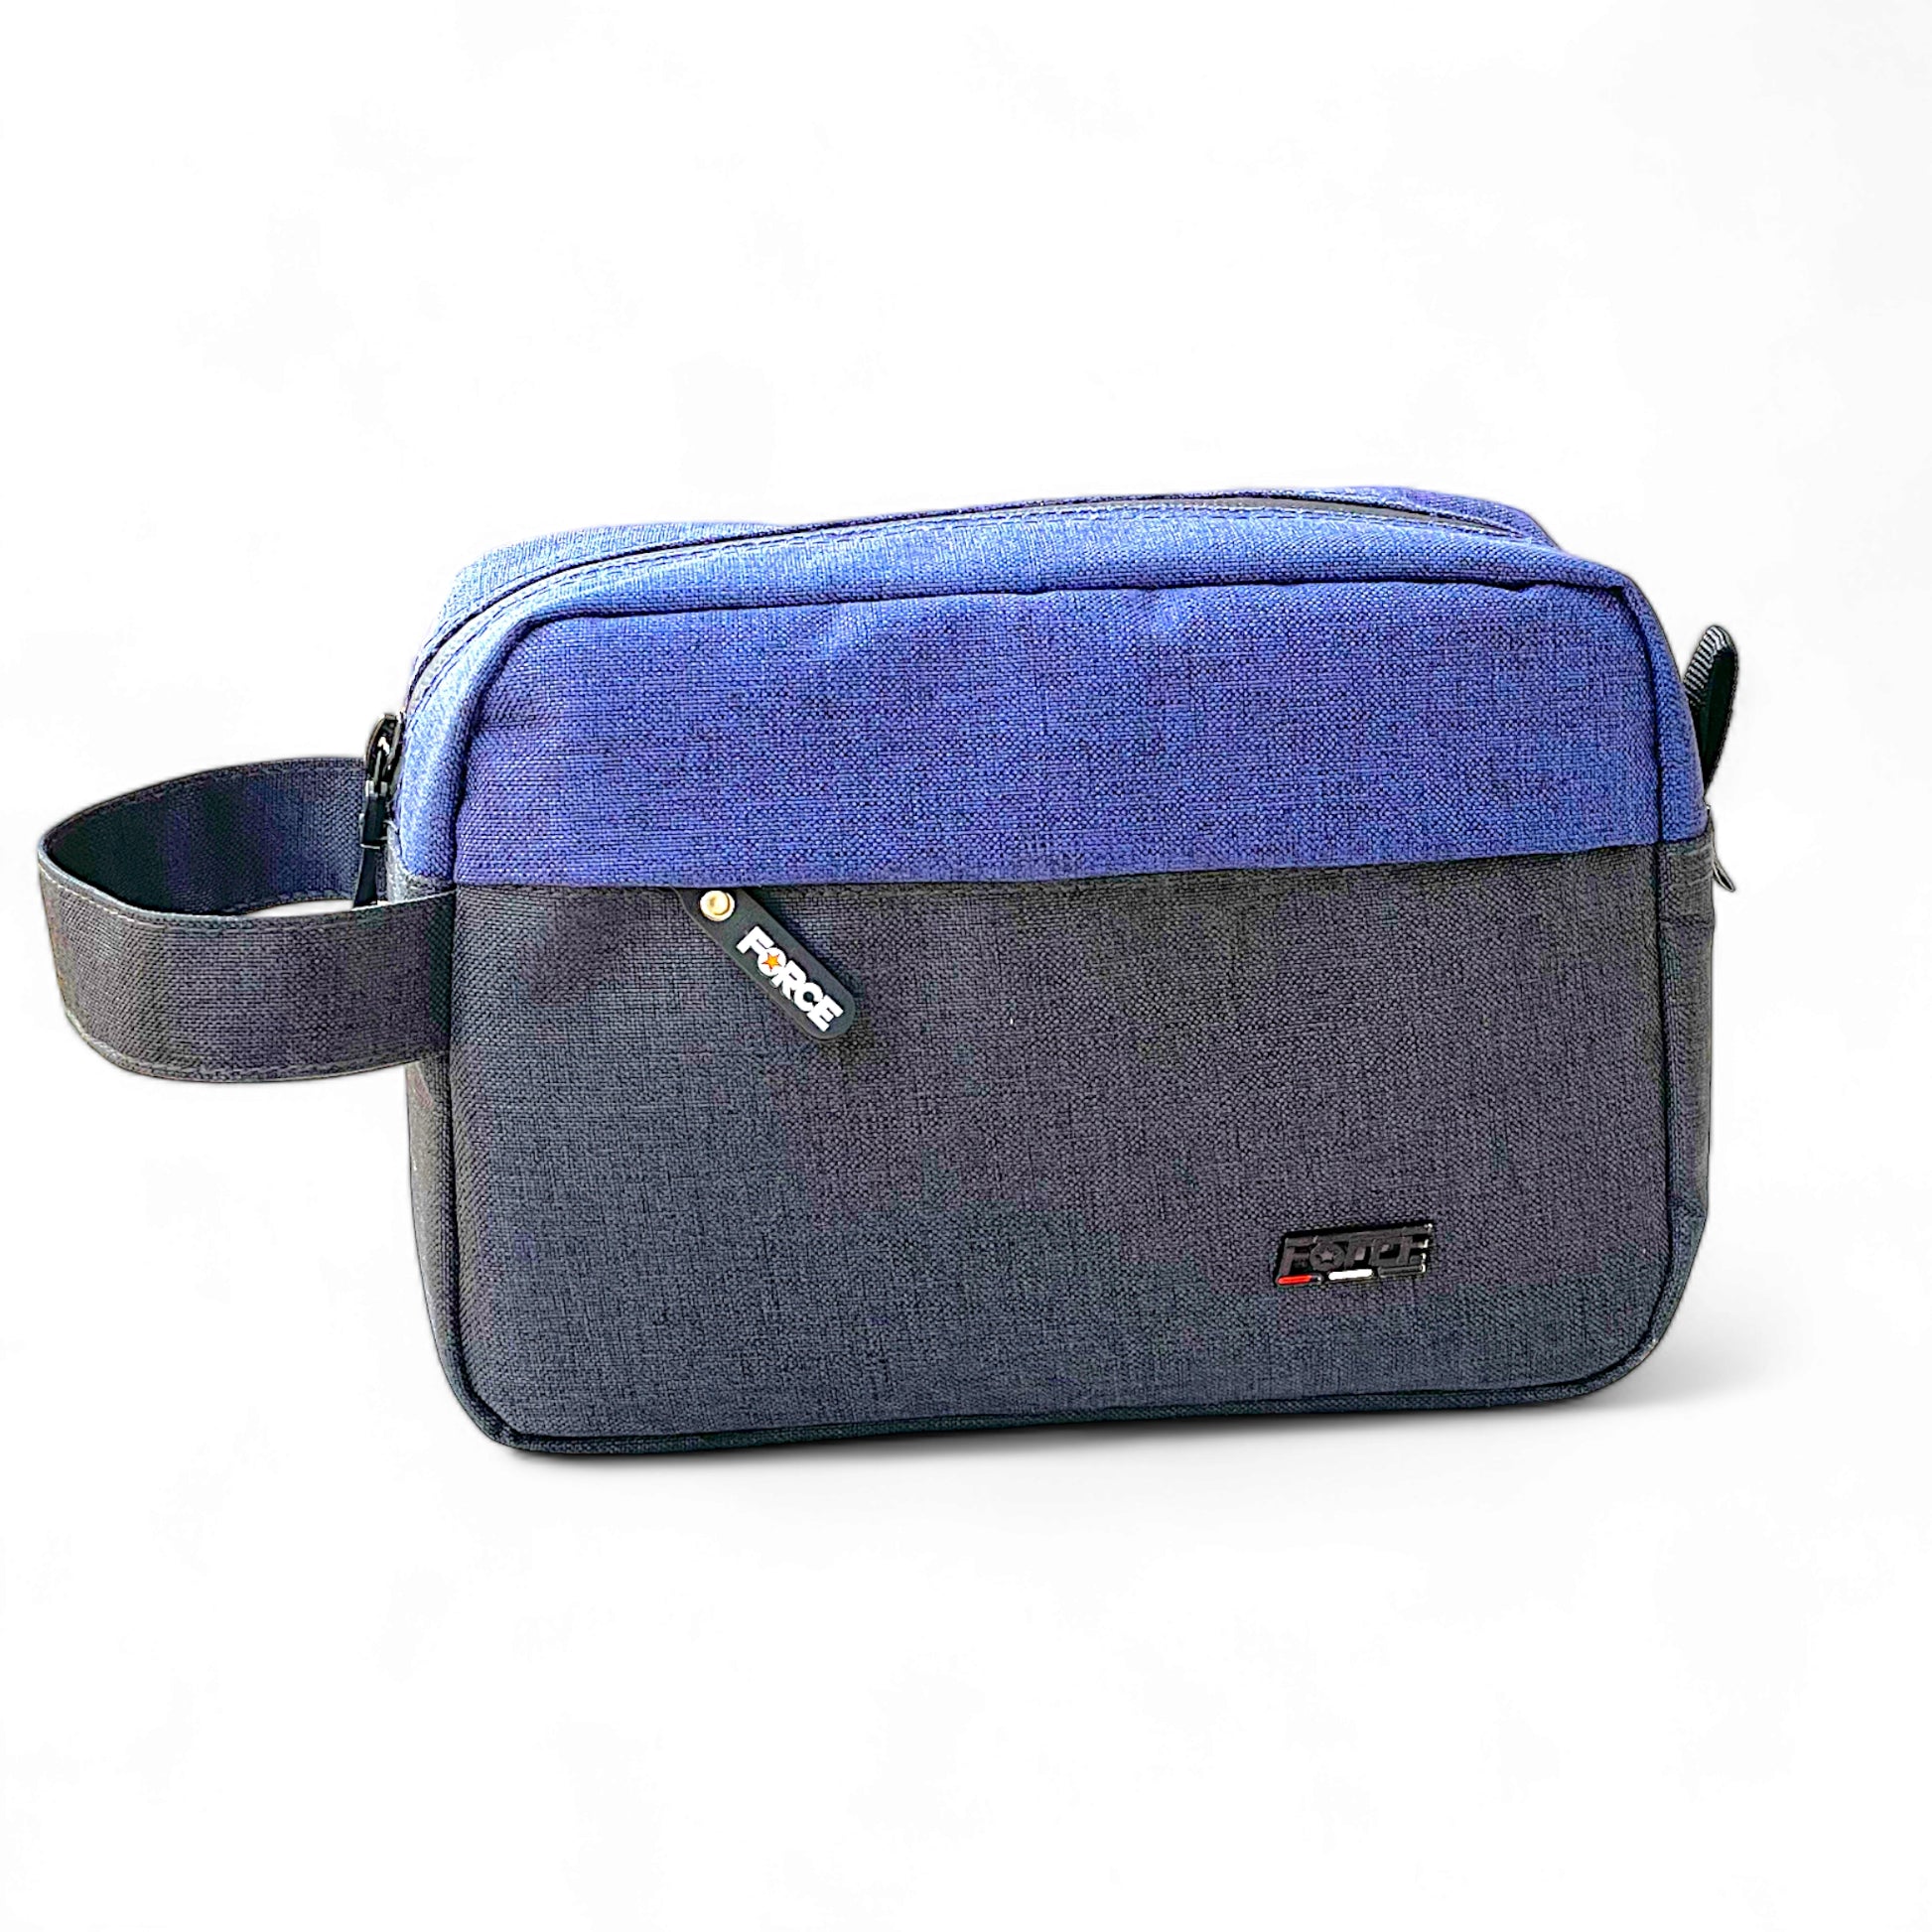 حقيبة يد للإكسسوارات وأدوات الزينة من فورس لينين - رمادي / أزرق - للجنسين-FCN003